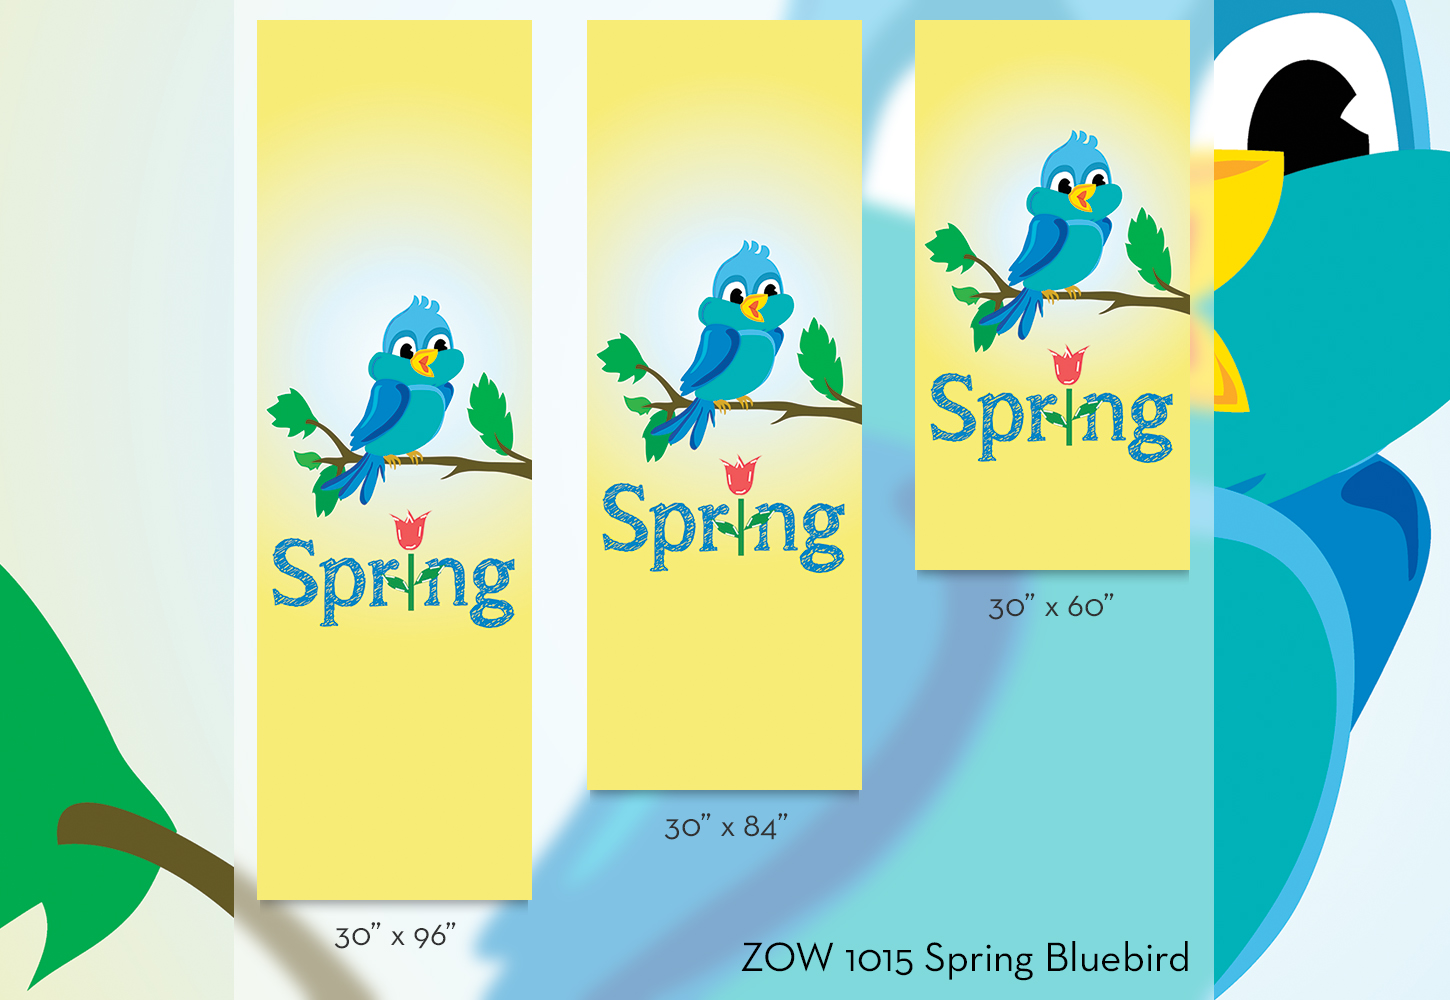 ZOW 1015 Spring Bluebird